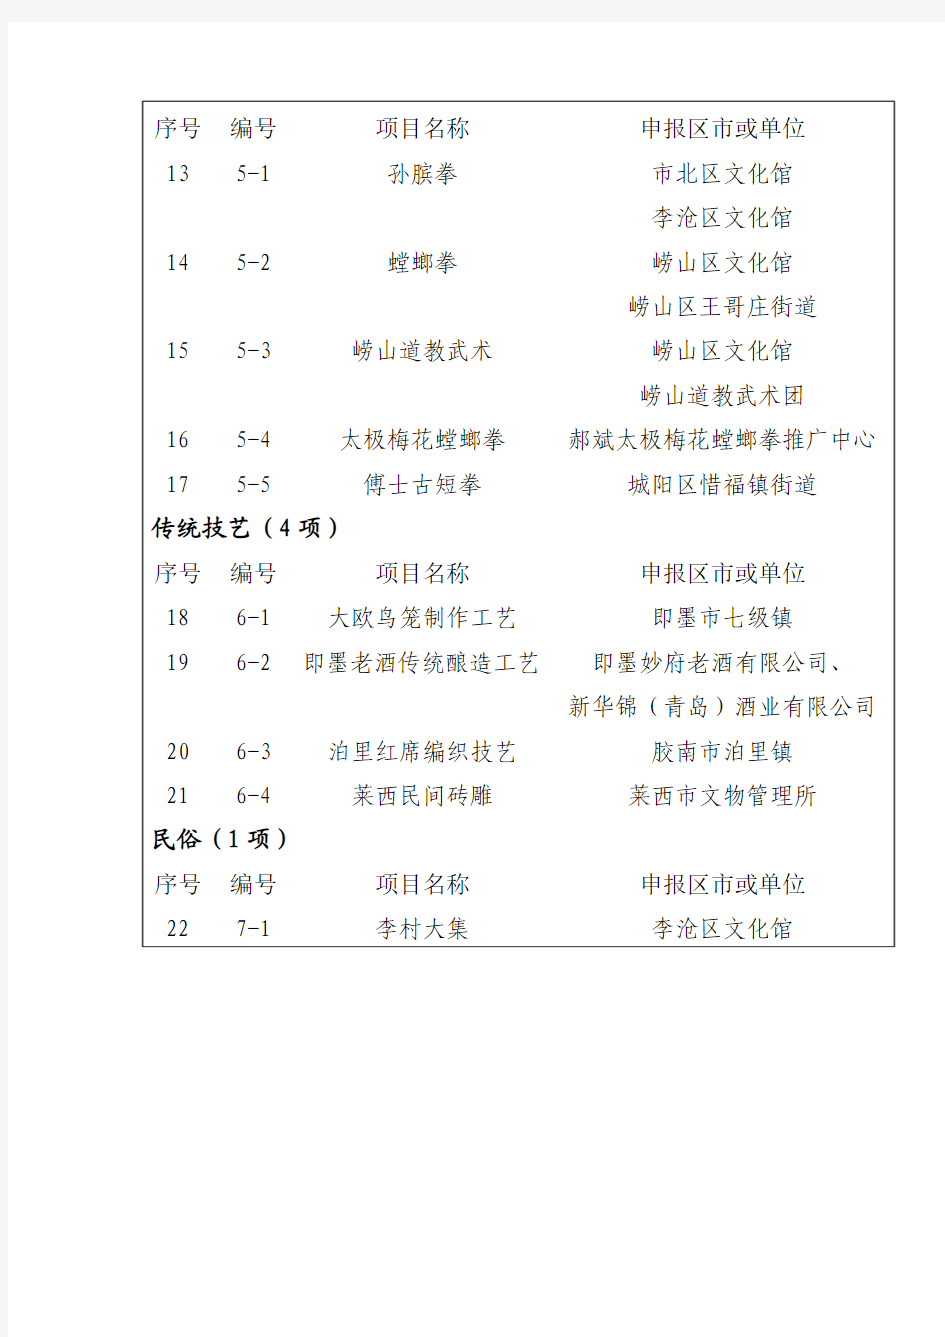 青岛市第二批非物质文化遗产名录推荐项目名单